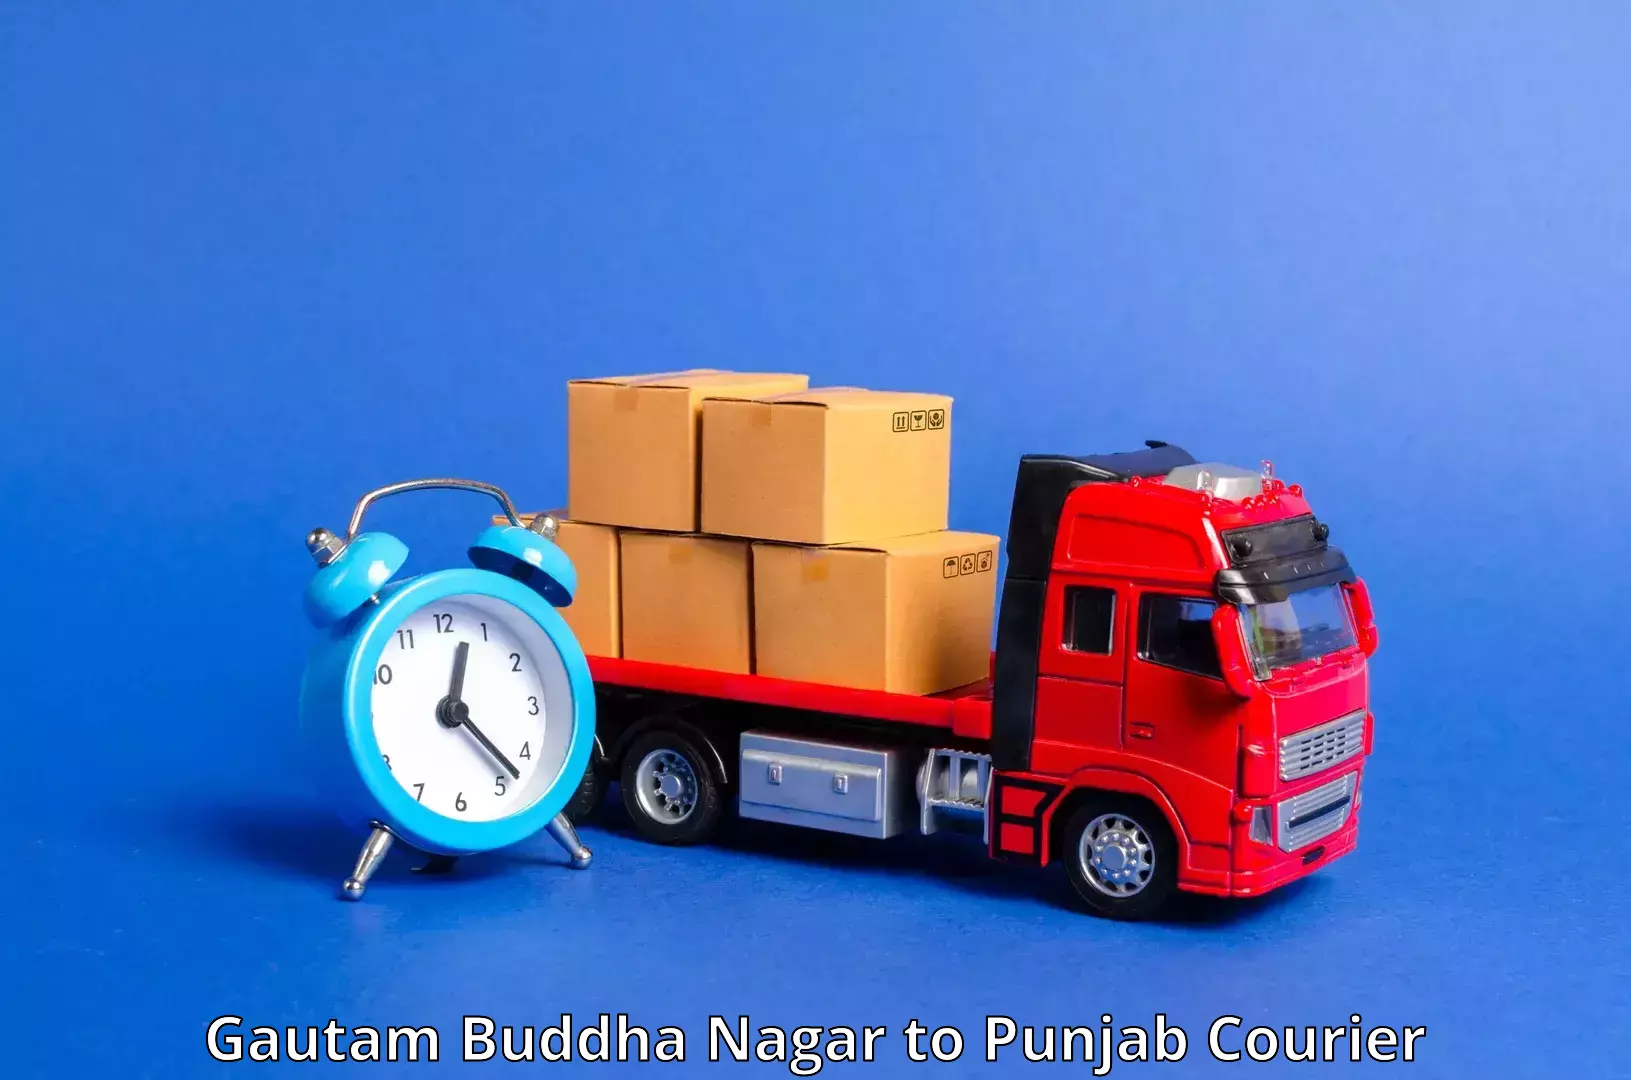 Courier dispatch services Gautam Buddha Nagar to Moga